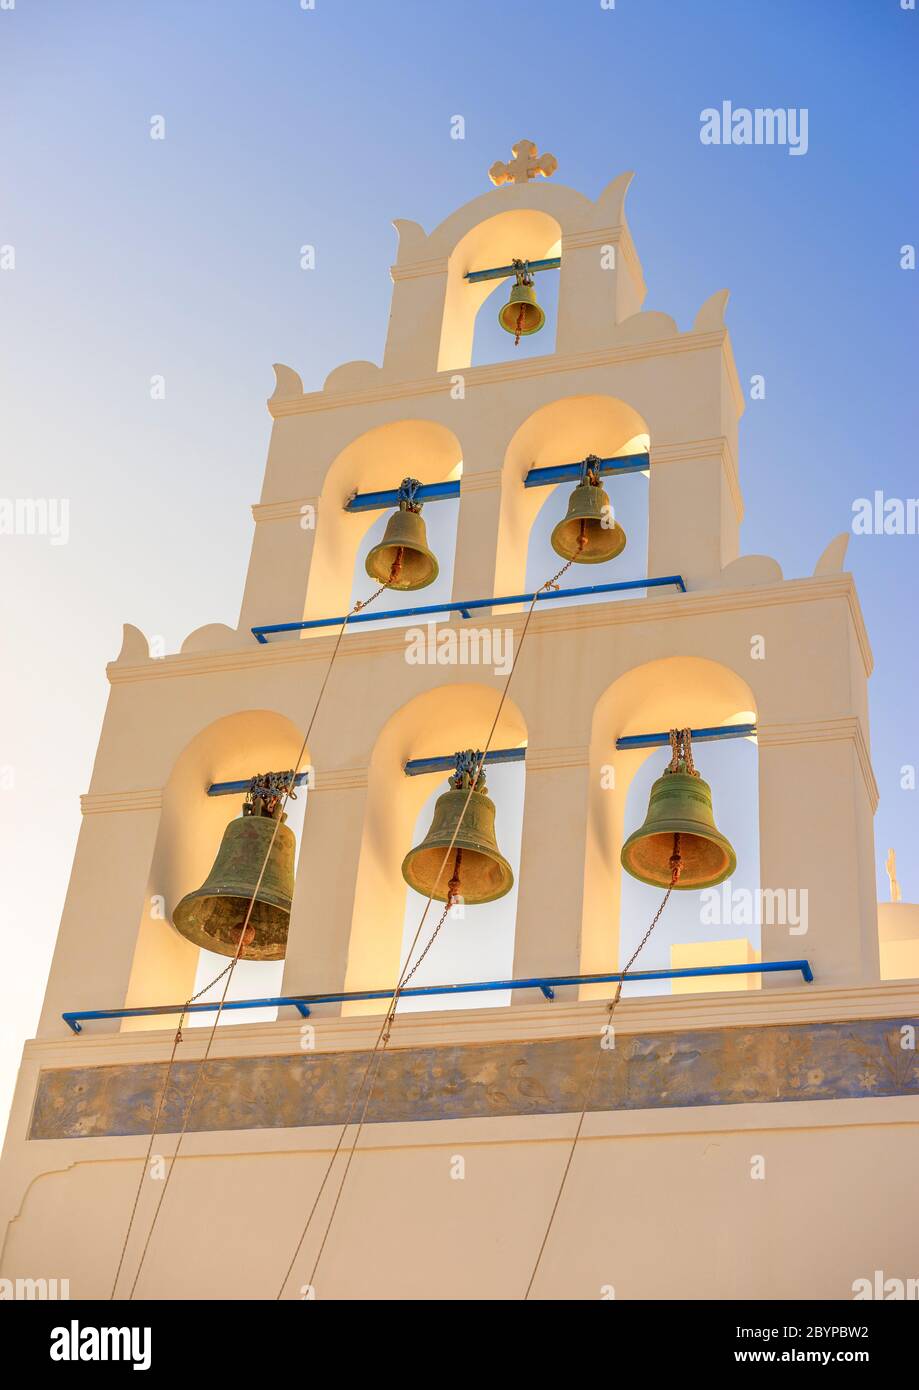 Vista in dettaglio del campanile a pila sulla chiesa principale di Oia, Panagia Platsani, sull'isola greca di Santorini. Foto Stock